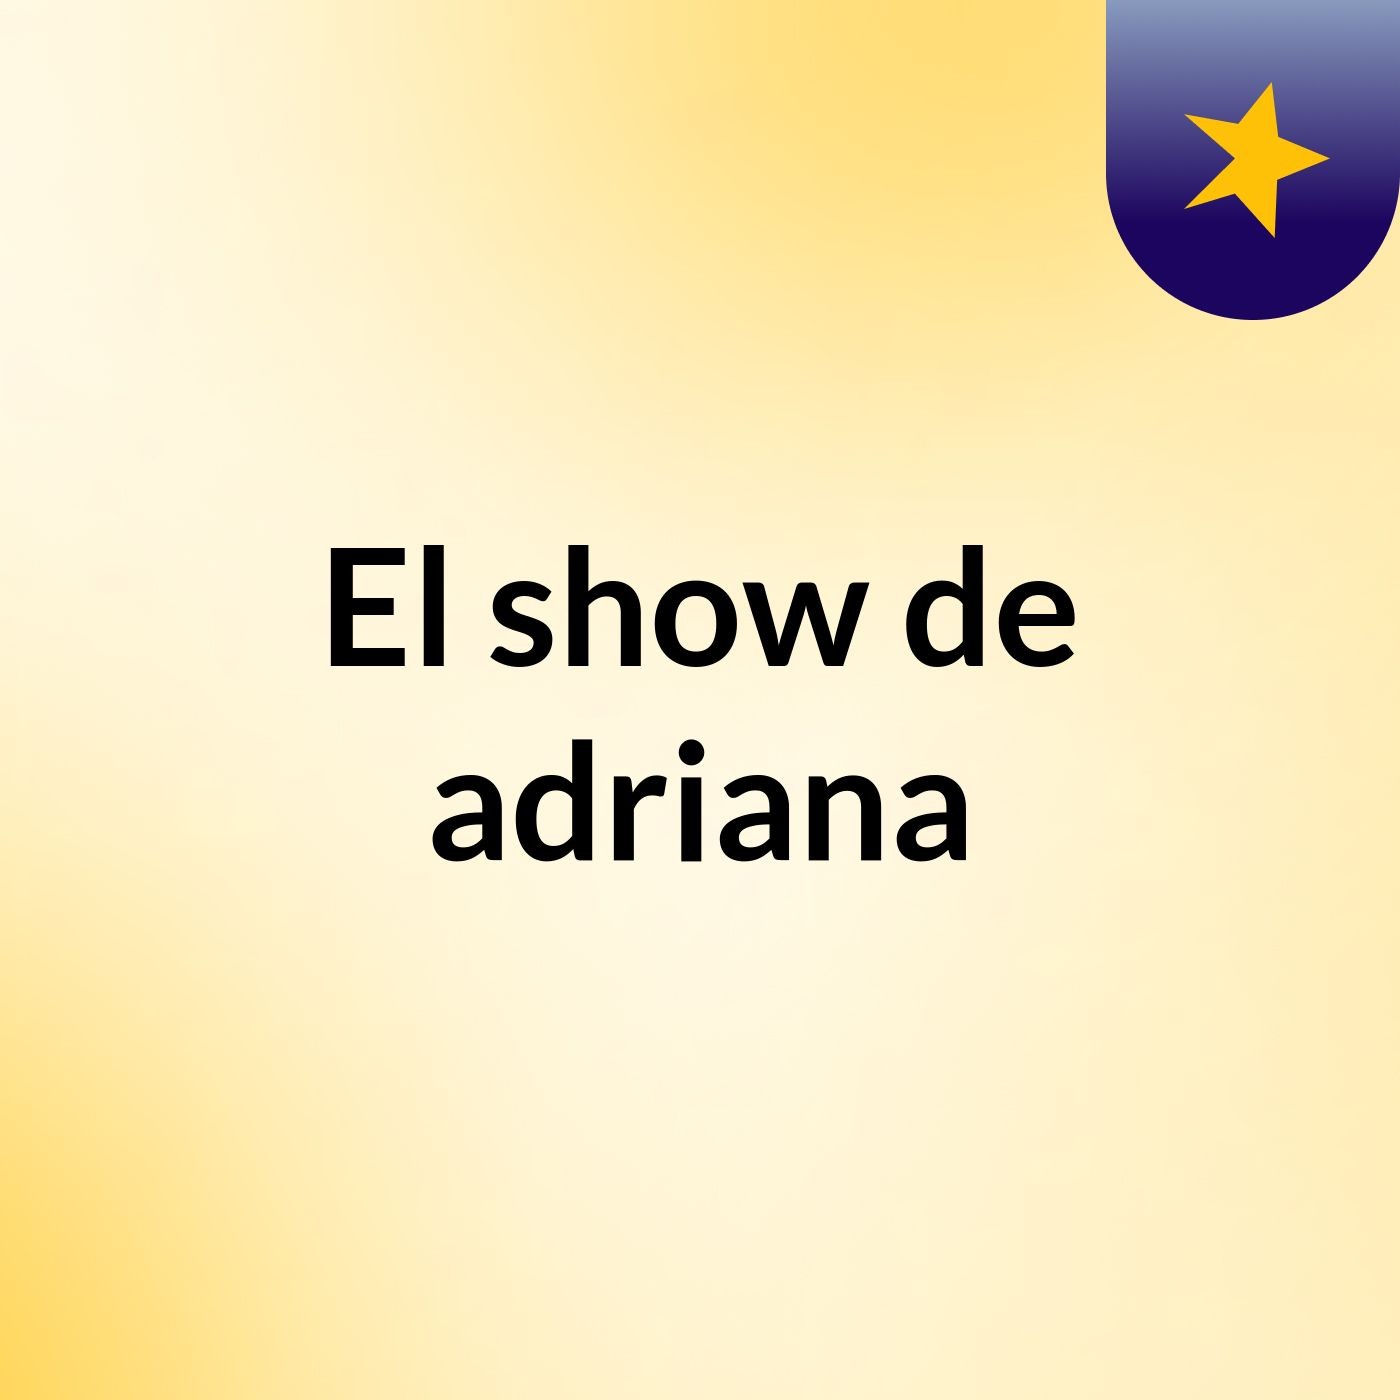 El show de adriana